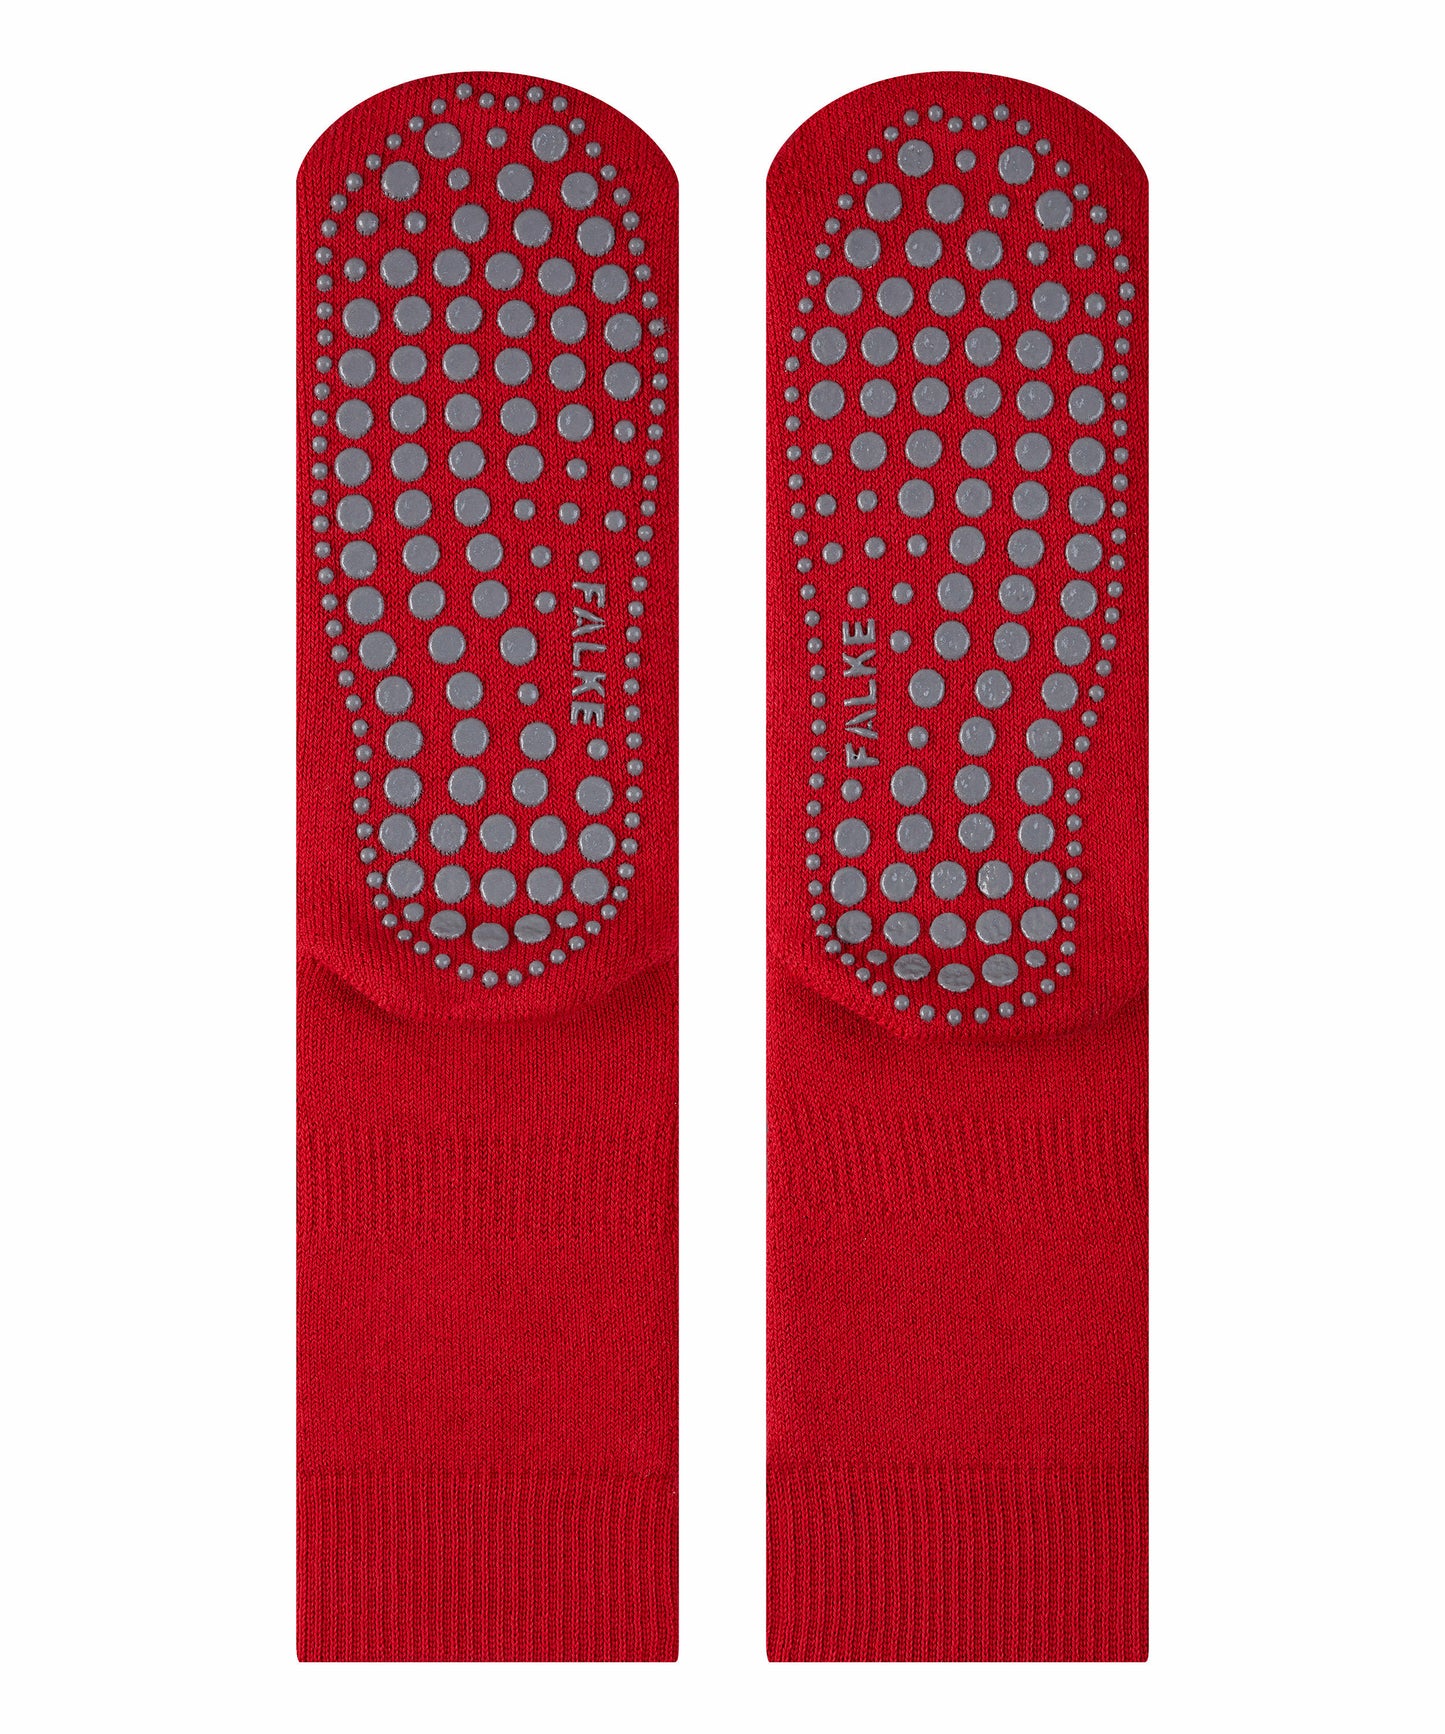 Socken Homepads (Scarlet)